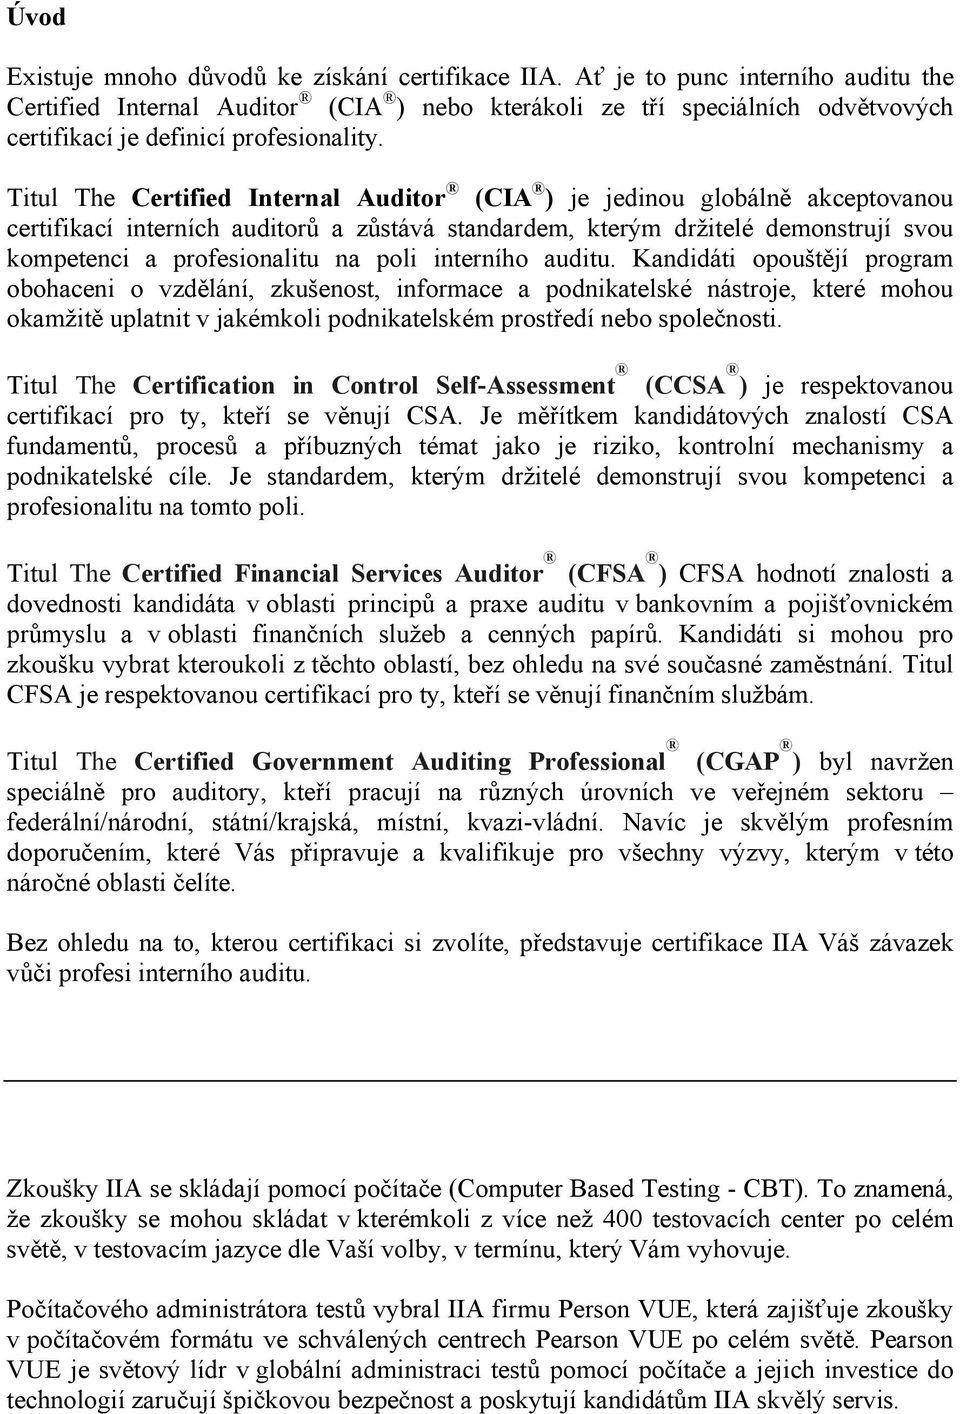 Titul The Certified Internal Auditor (CIA ) je jedinou globálně akceptovanou certifikací interních auditorů a zůstává standardem, kterým držitelé demonstrují svou kompetenci a profesionalitu na poli